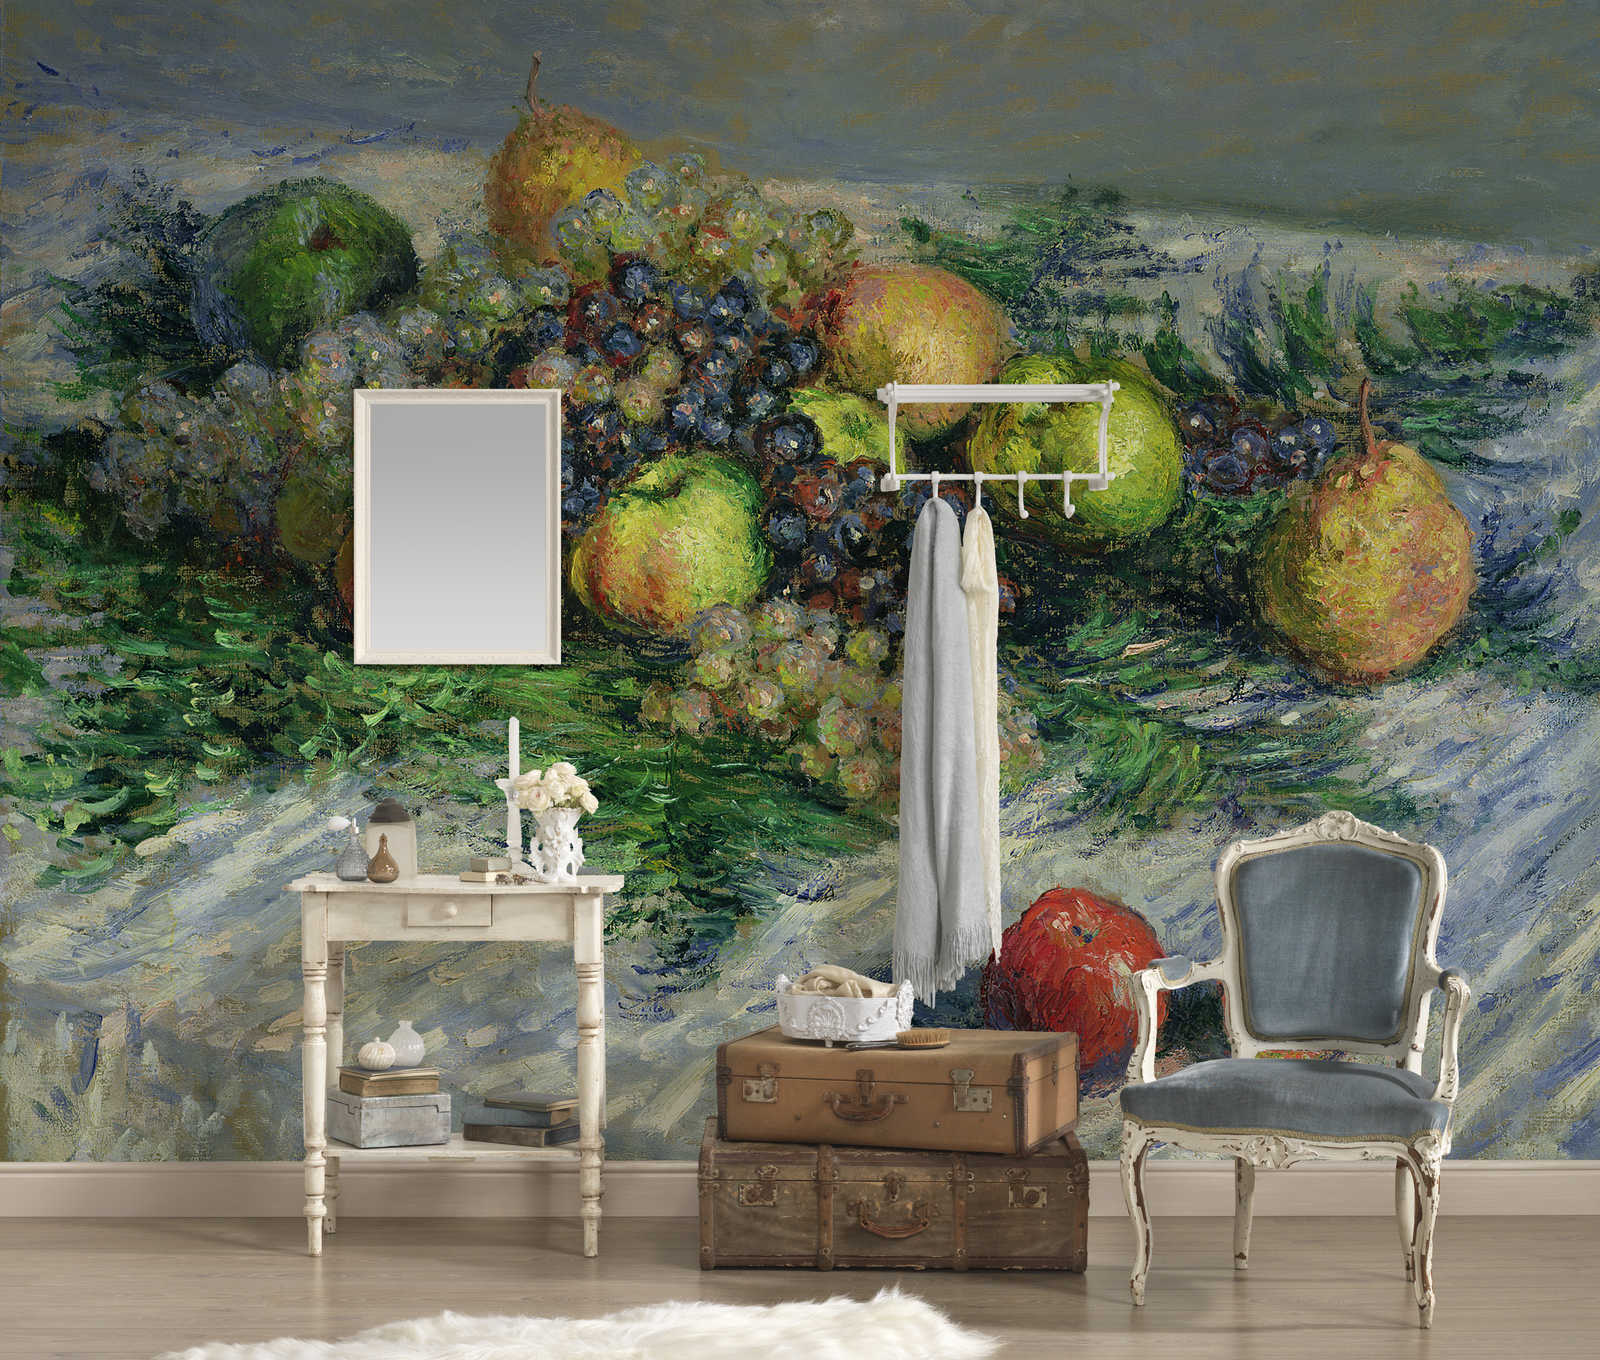             Fototapete "Stillleben mit Birnen und Trauben" von Claude Monet
        